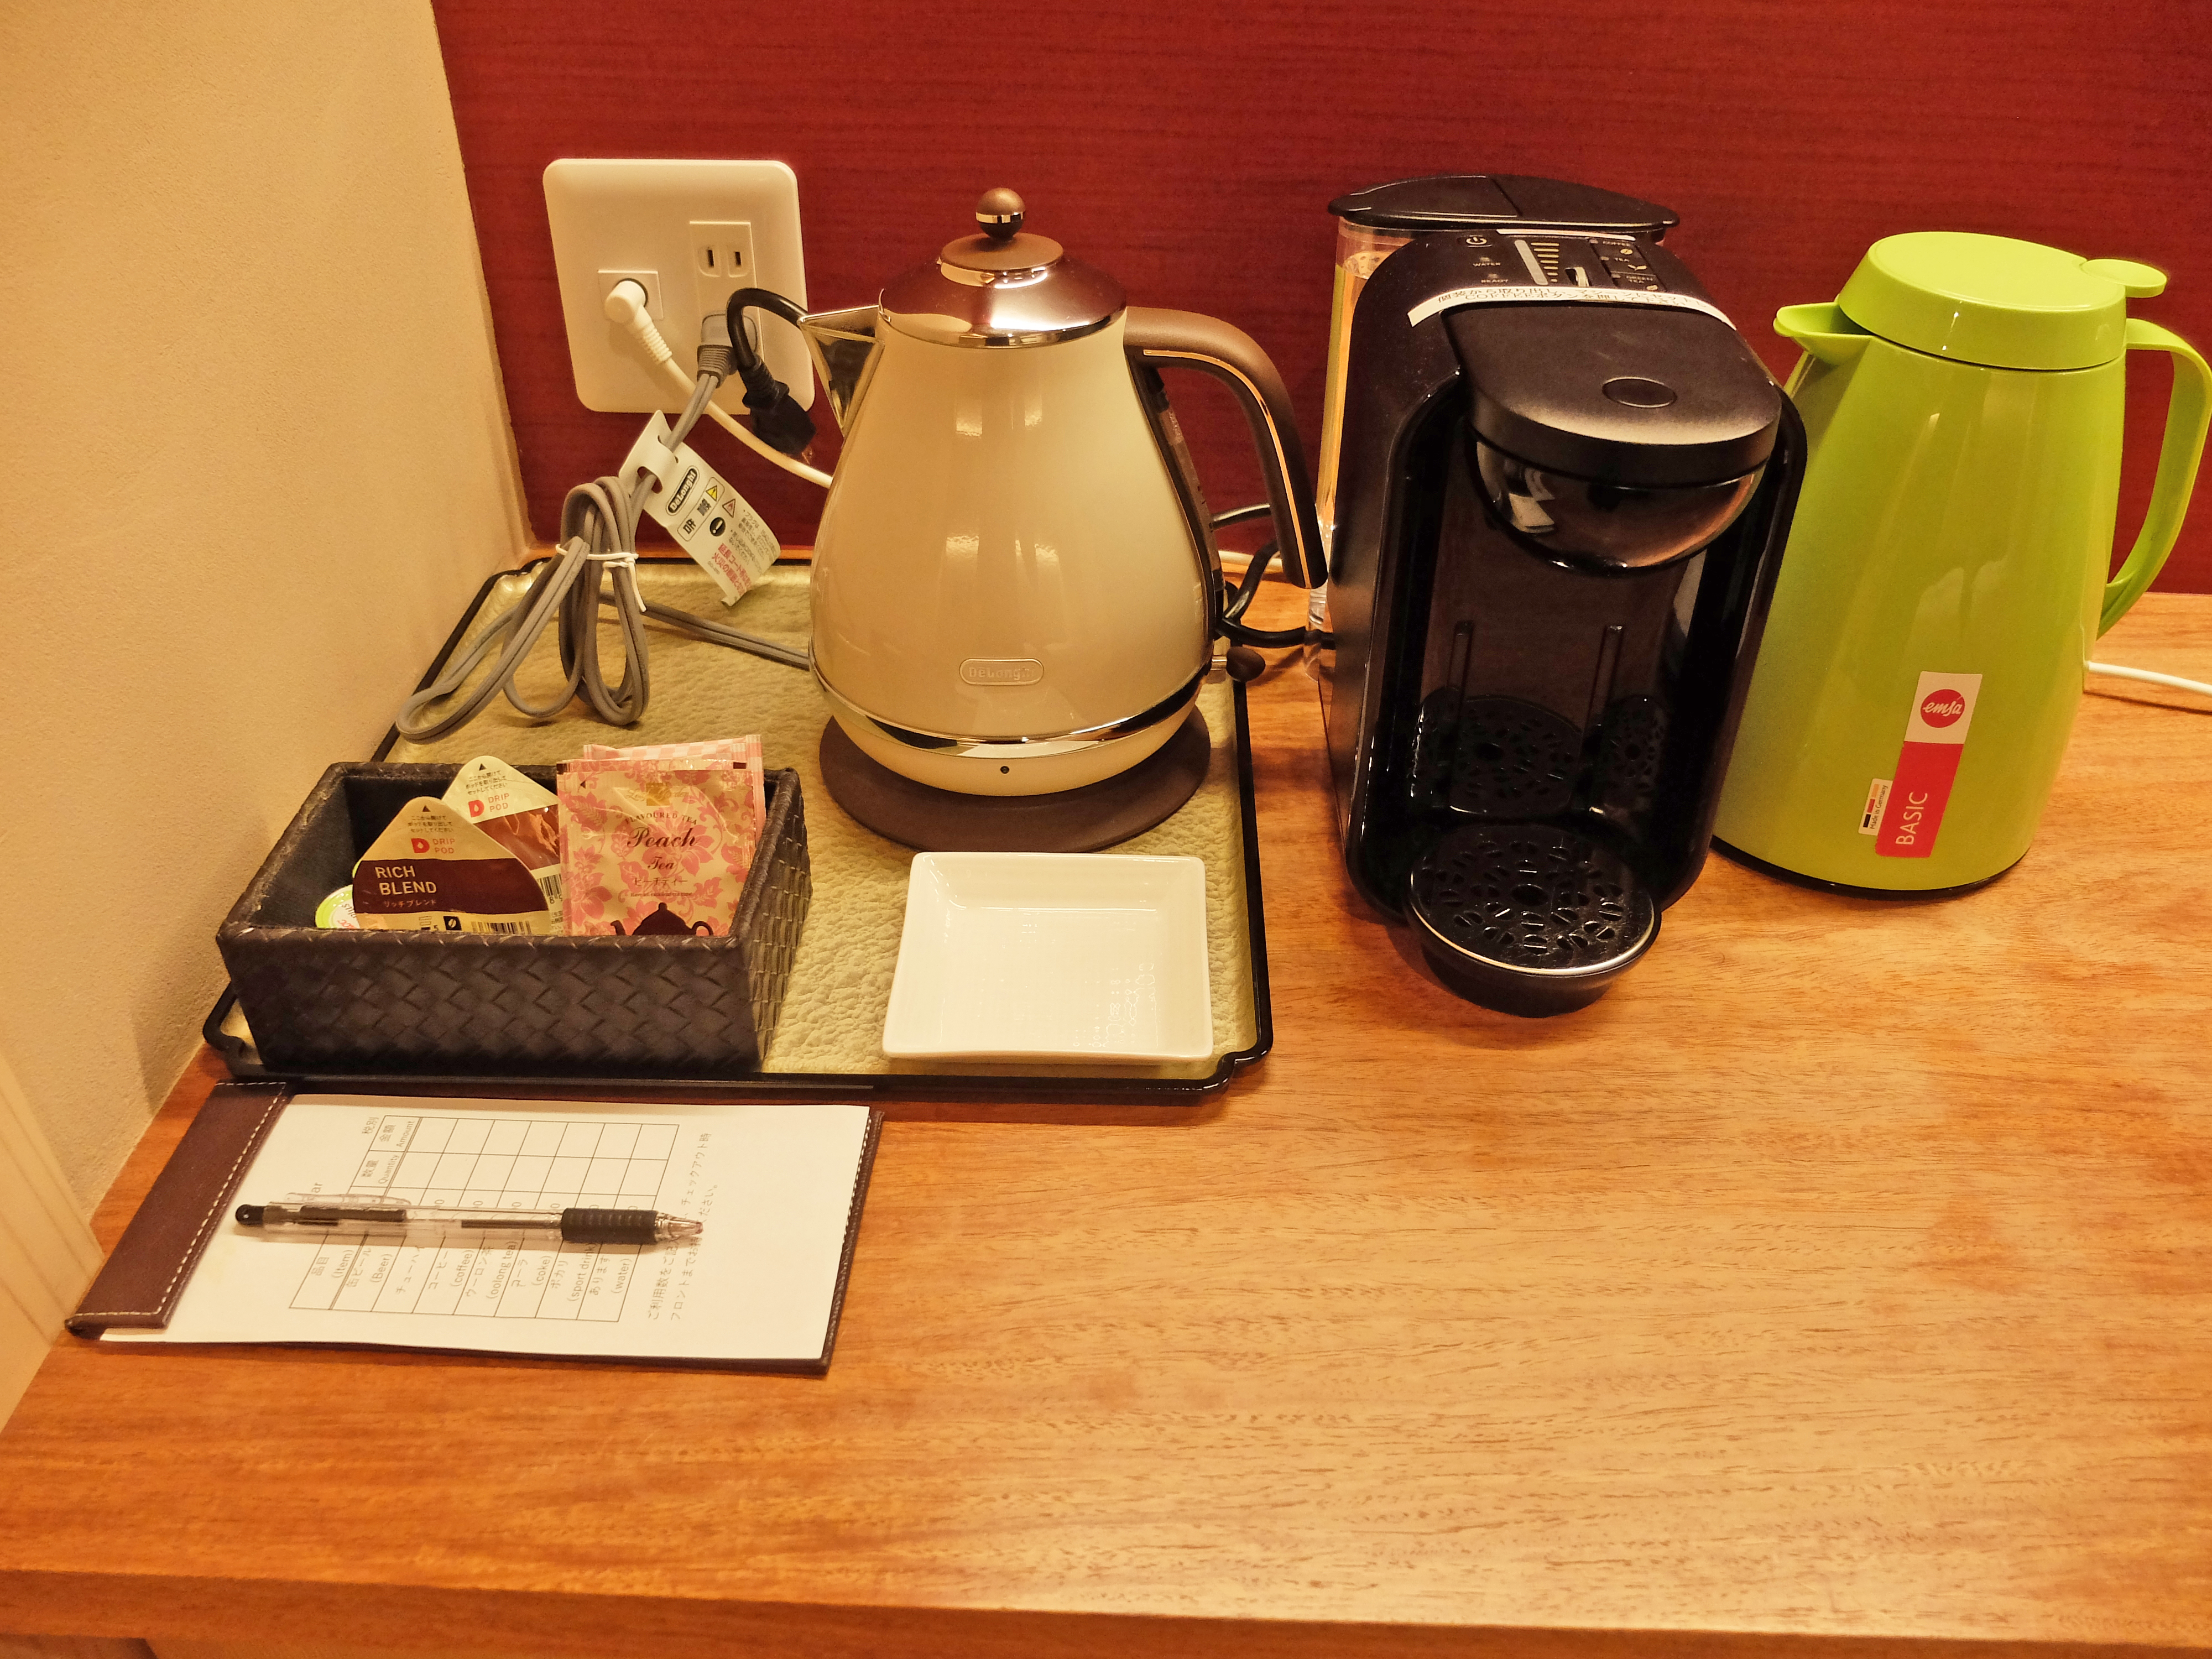 房間內準備了咖啡機、電熱水壼、保溫瓶、茶包、咖啡｜有馬溫泉SPA TERRACE 紫翠（Shisui｜スパ テラス 紫翠）有馬溫泉 有馬溫泉旅館 有馬溫泉酒店 有馬溫泉飯店 有馬天然溫泉 Arima Onsen 有馬温泉